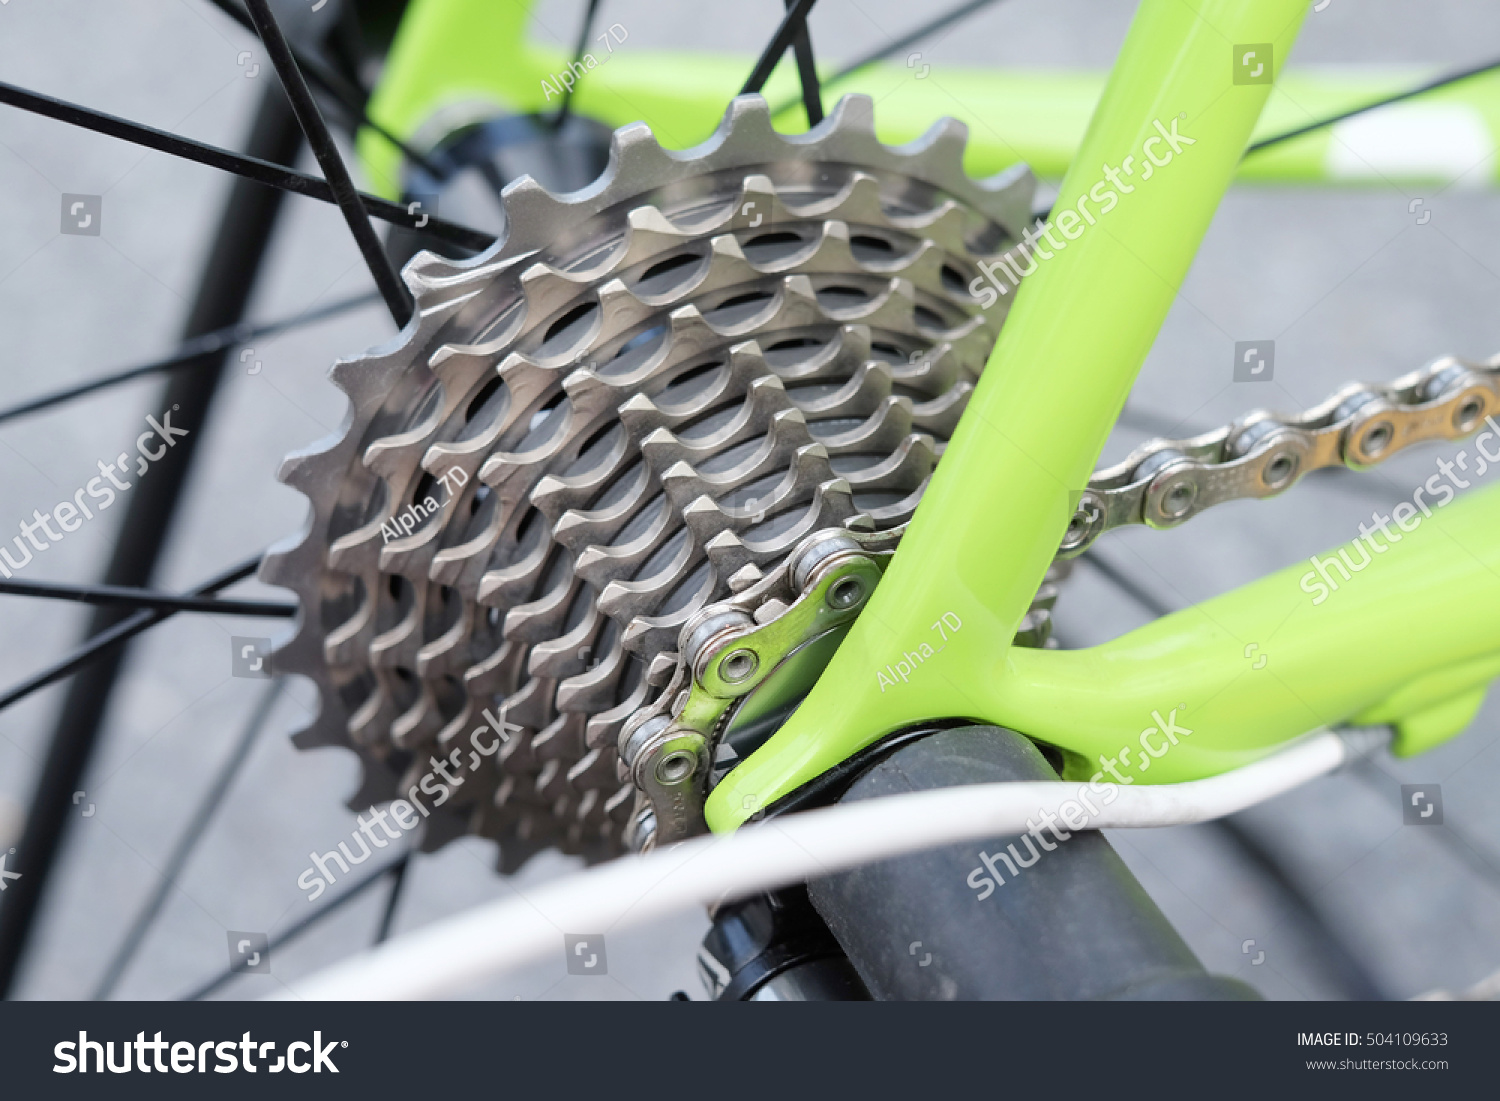 cannondale bike parts